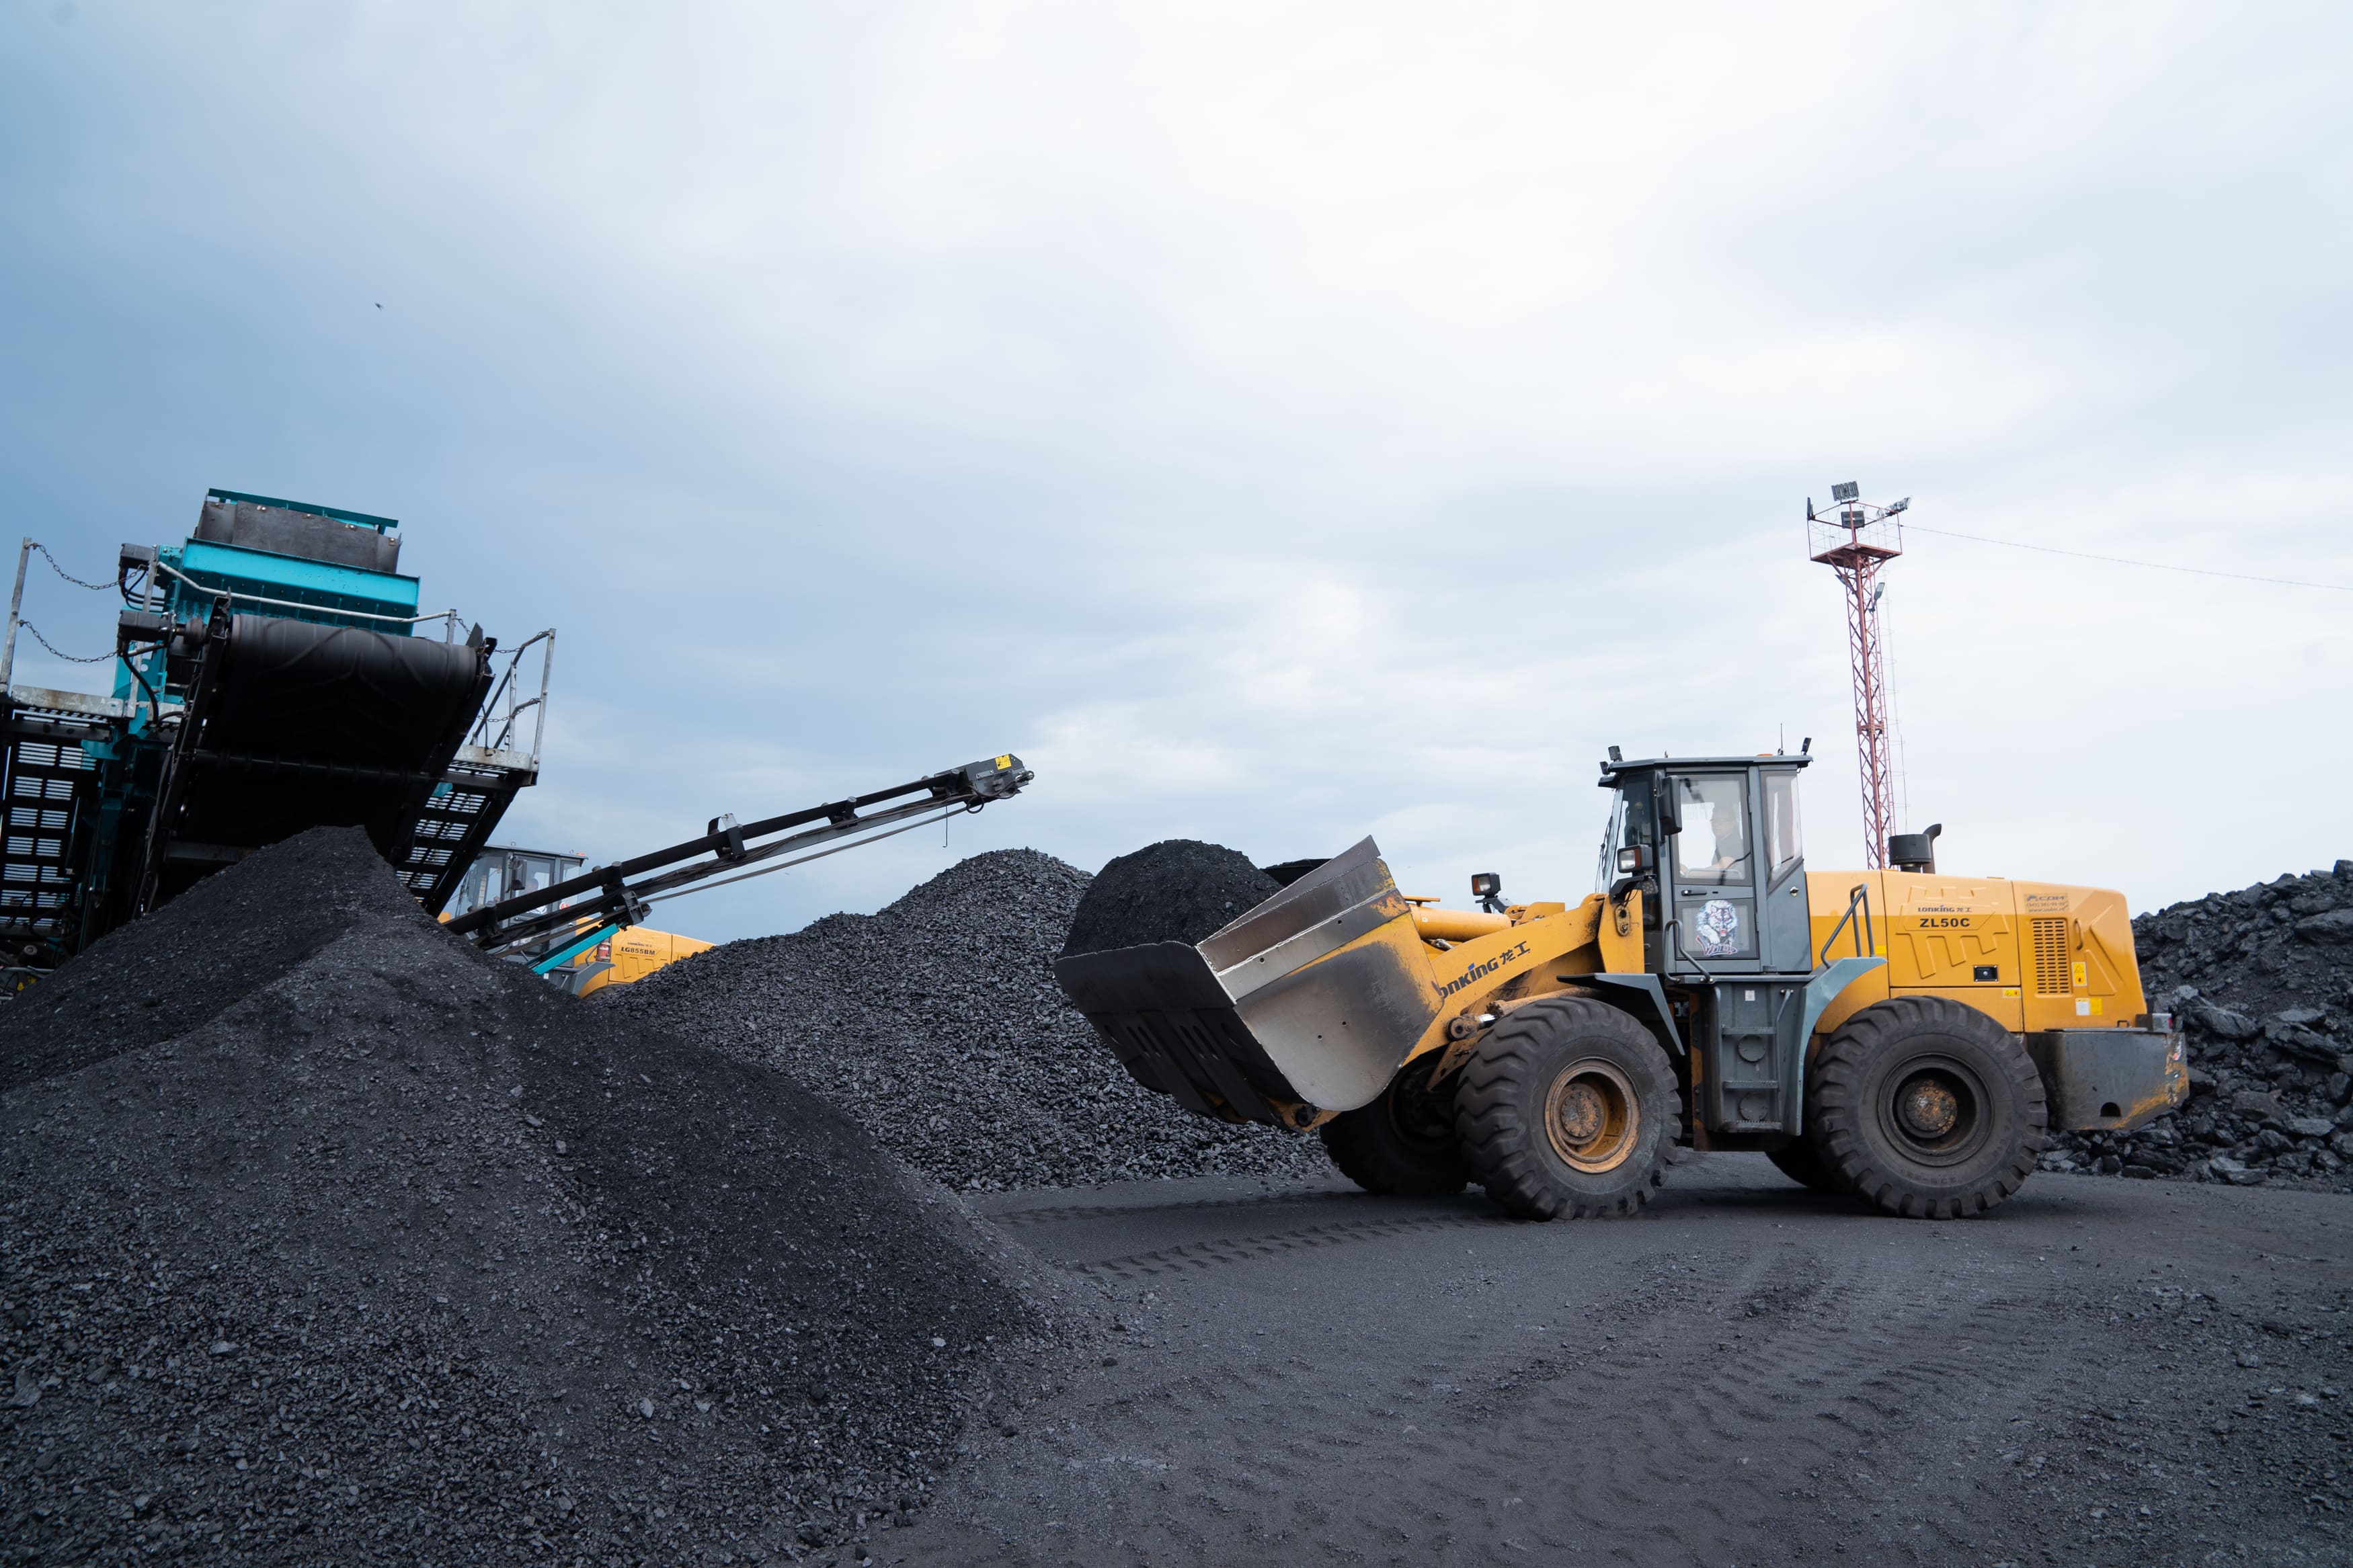 C начала года на предприятиях АО Стройсервис добыли 7,9 млн тонн угля. Стройсервис